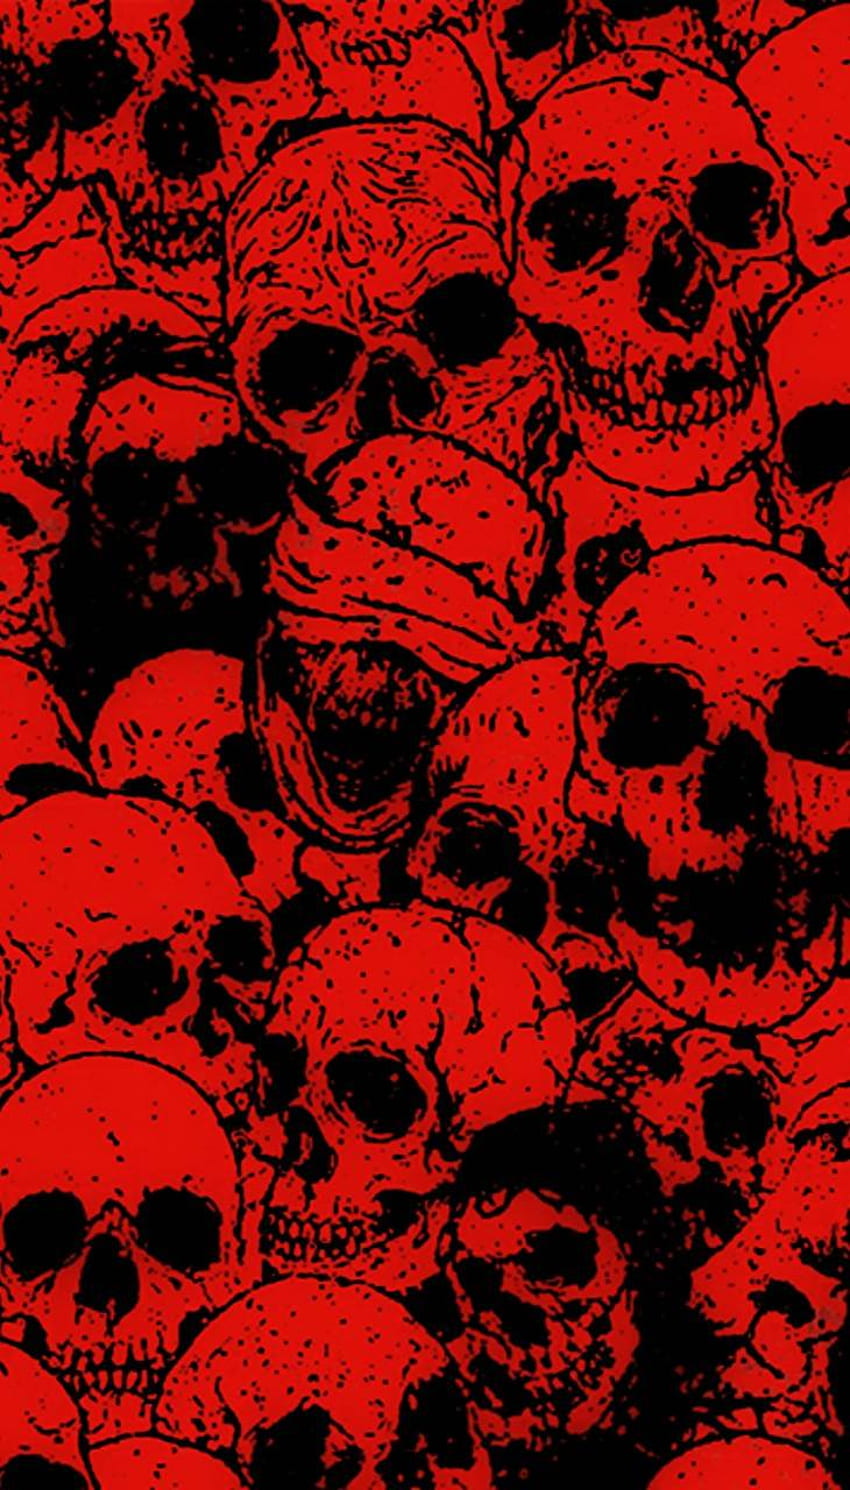 Red Skull Wallpaper by efforfake on DeviantArt